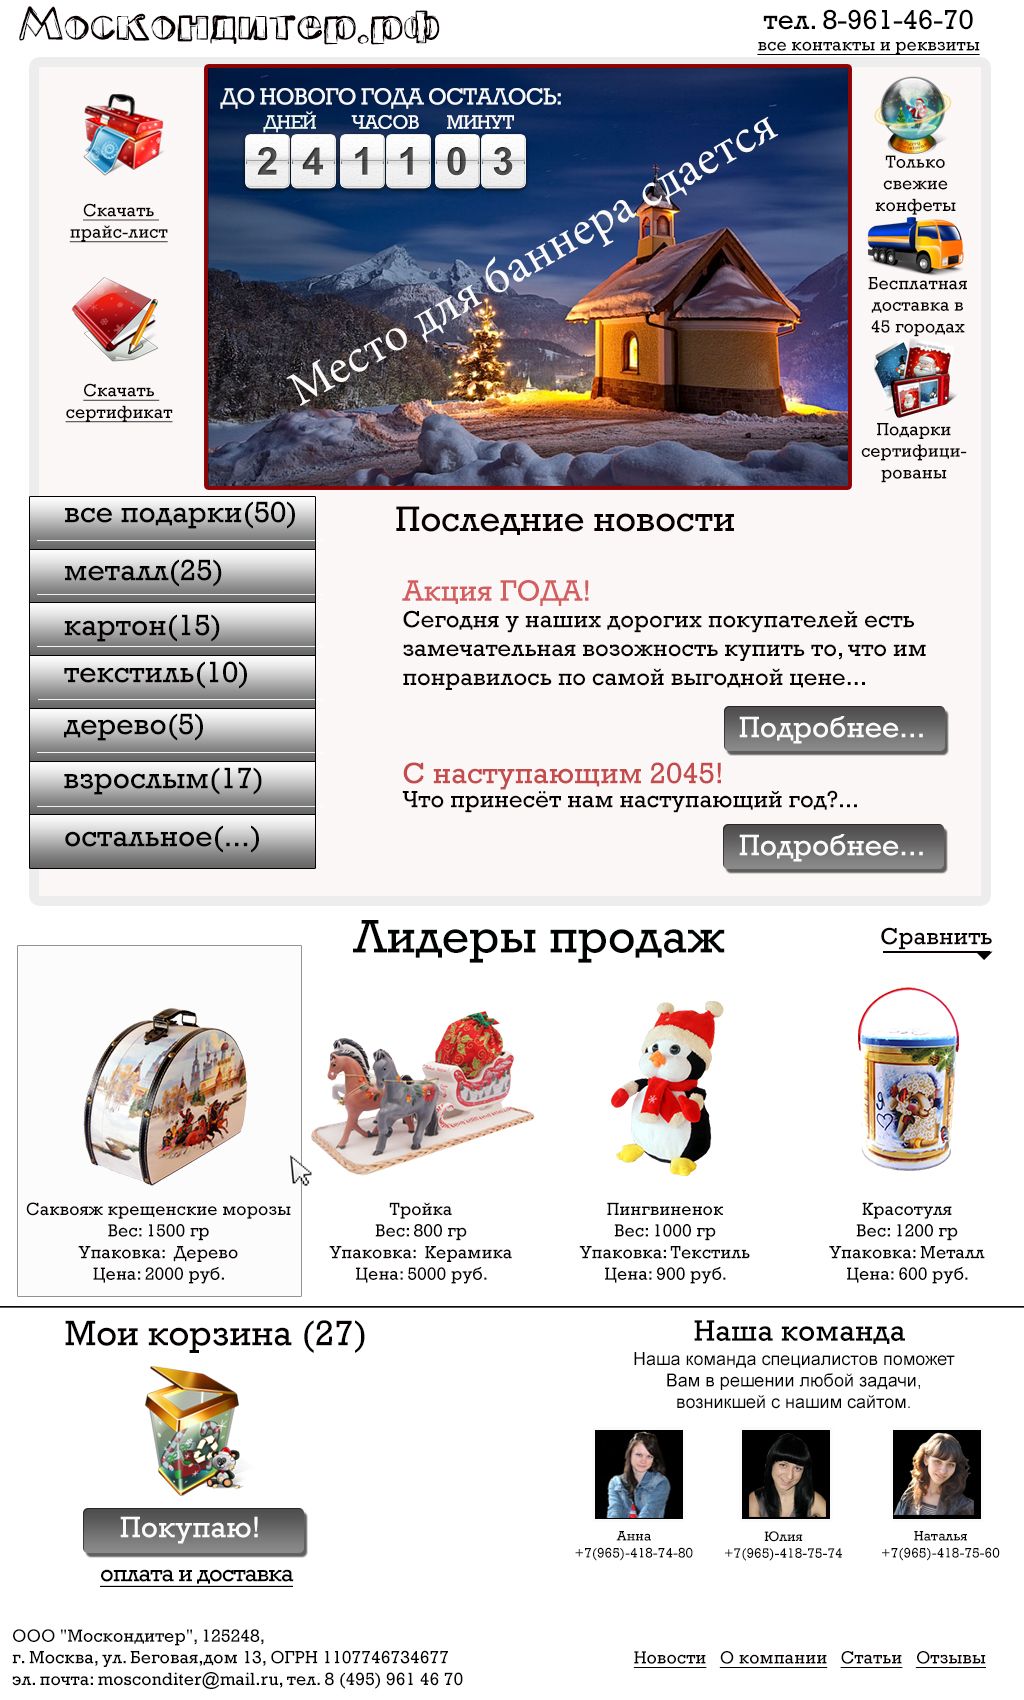 интернет магазин сладких подарков - дизайнер PelmeshkOsS